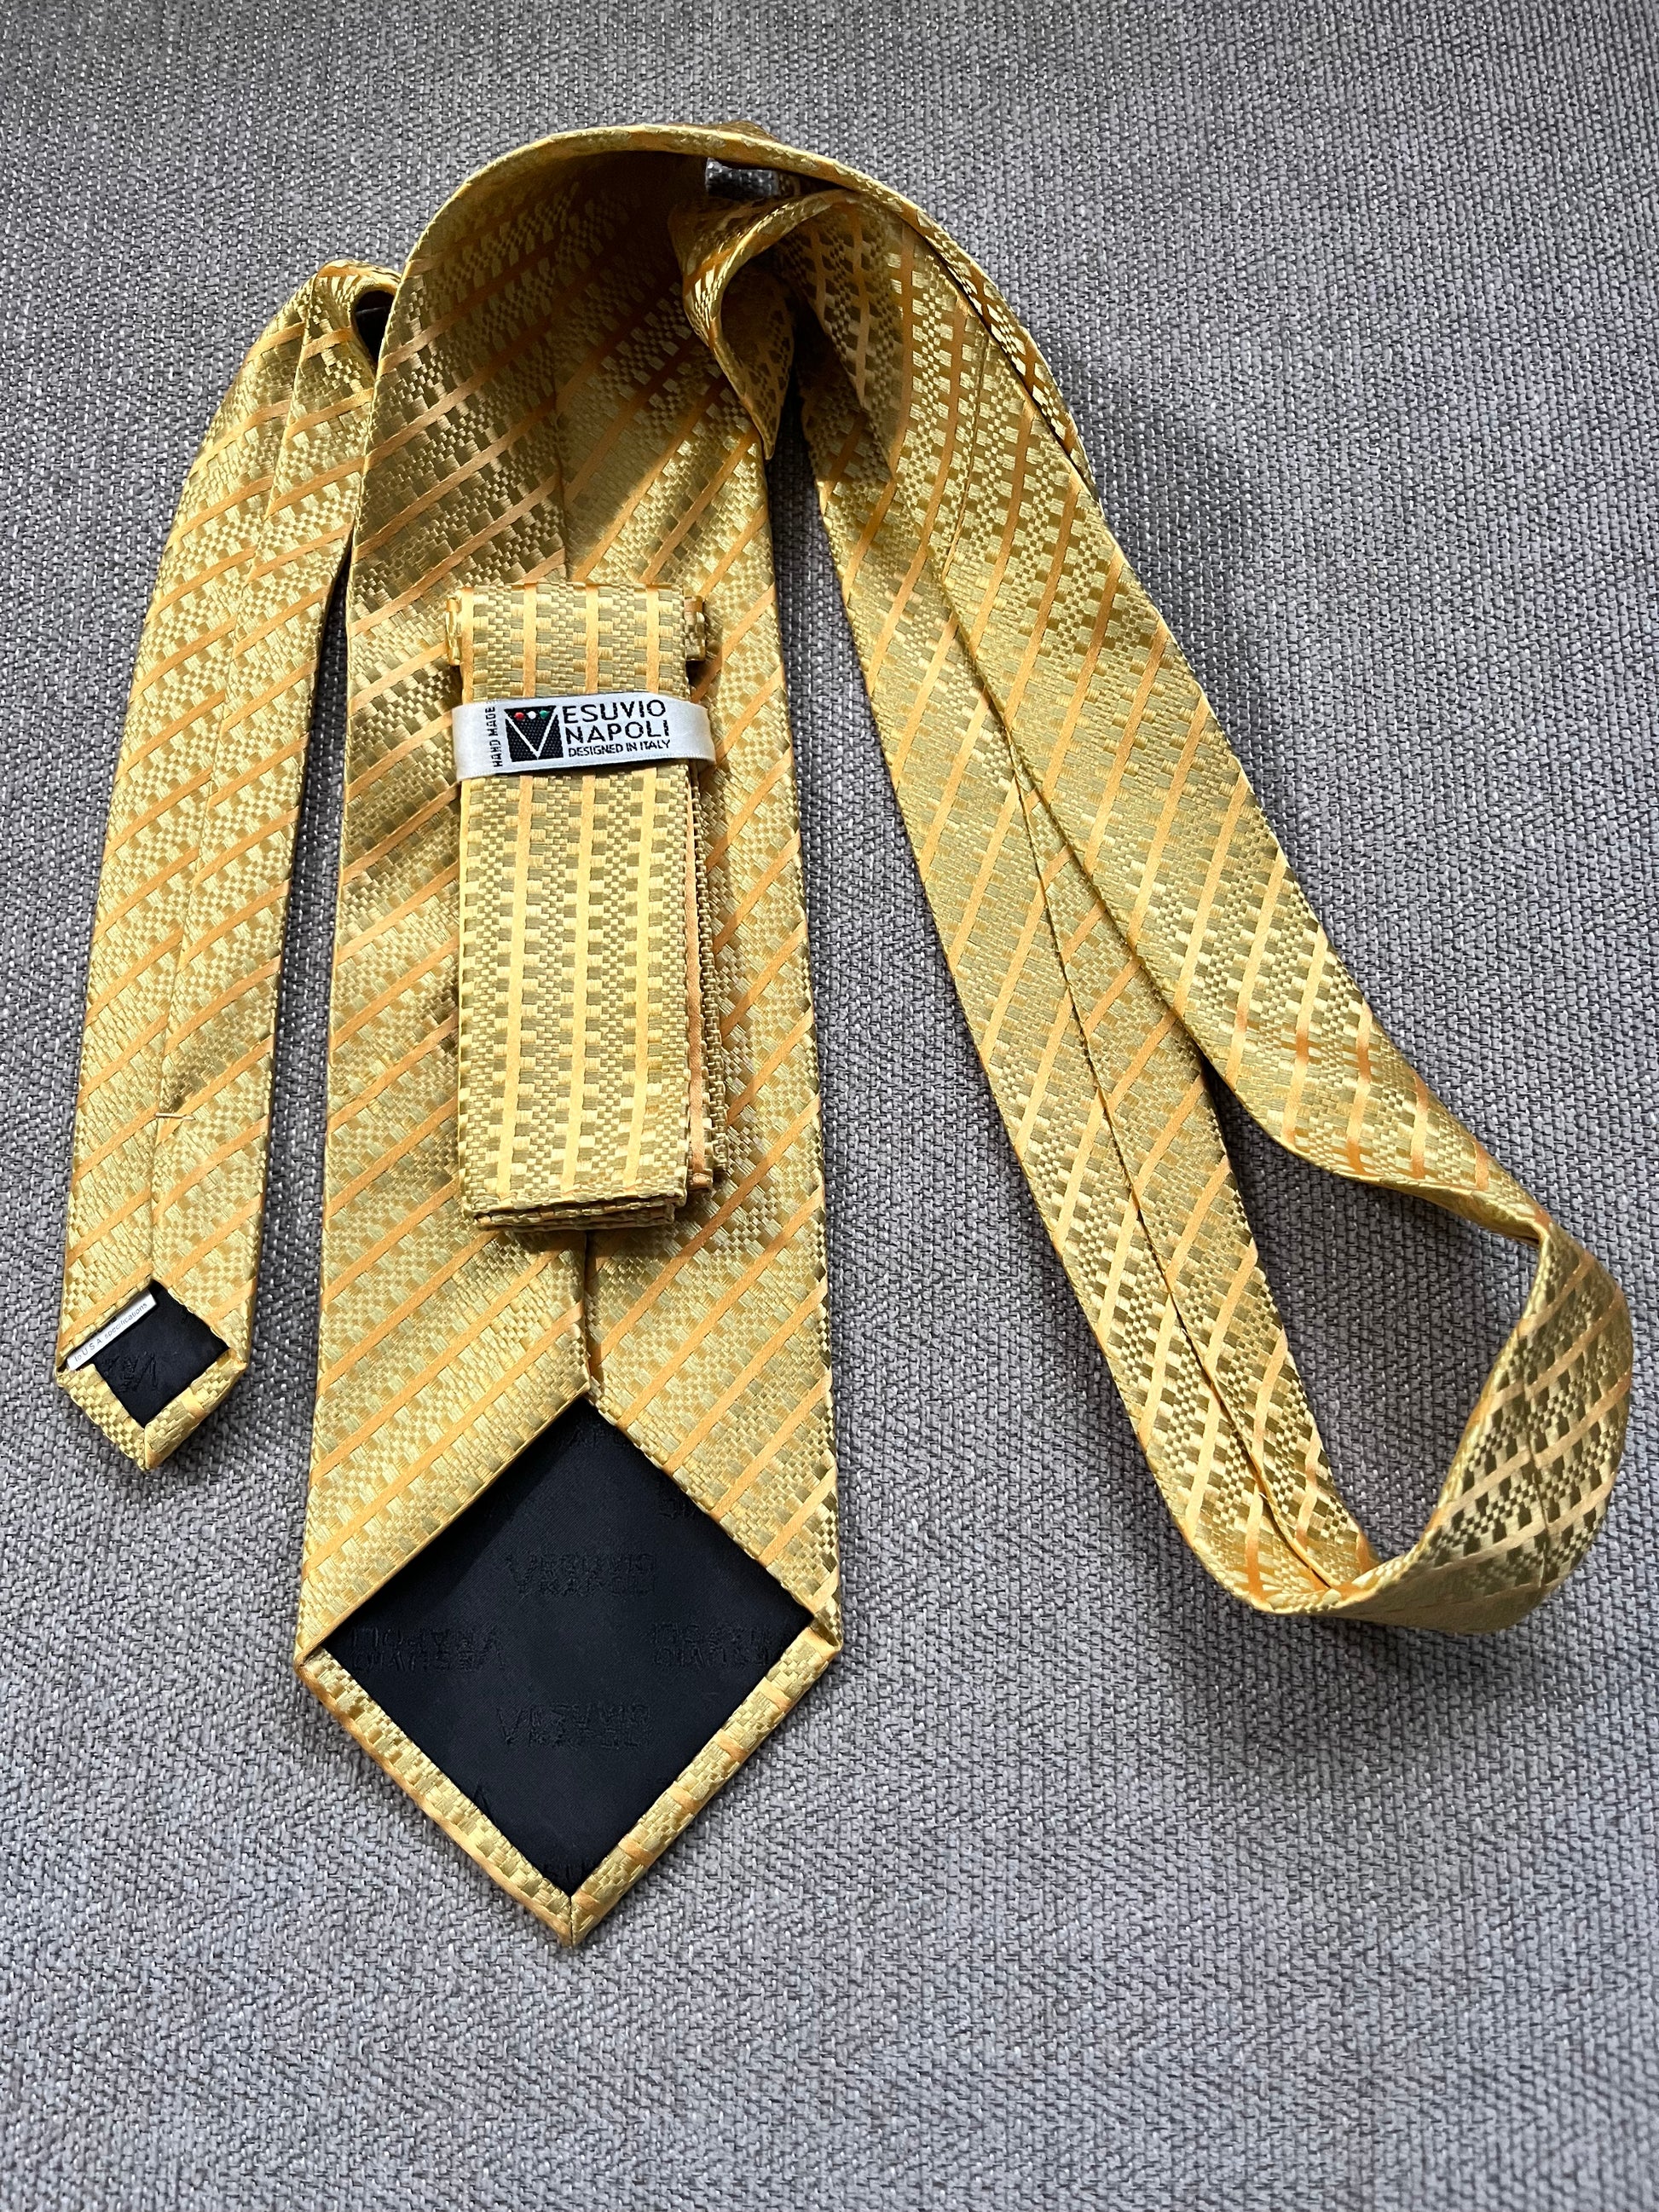 USA Made Silk Tie